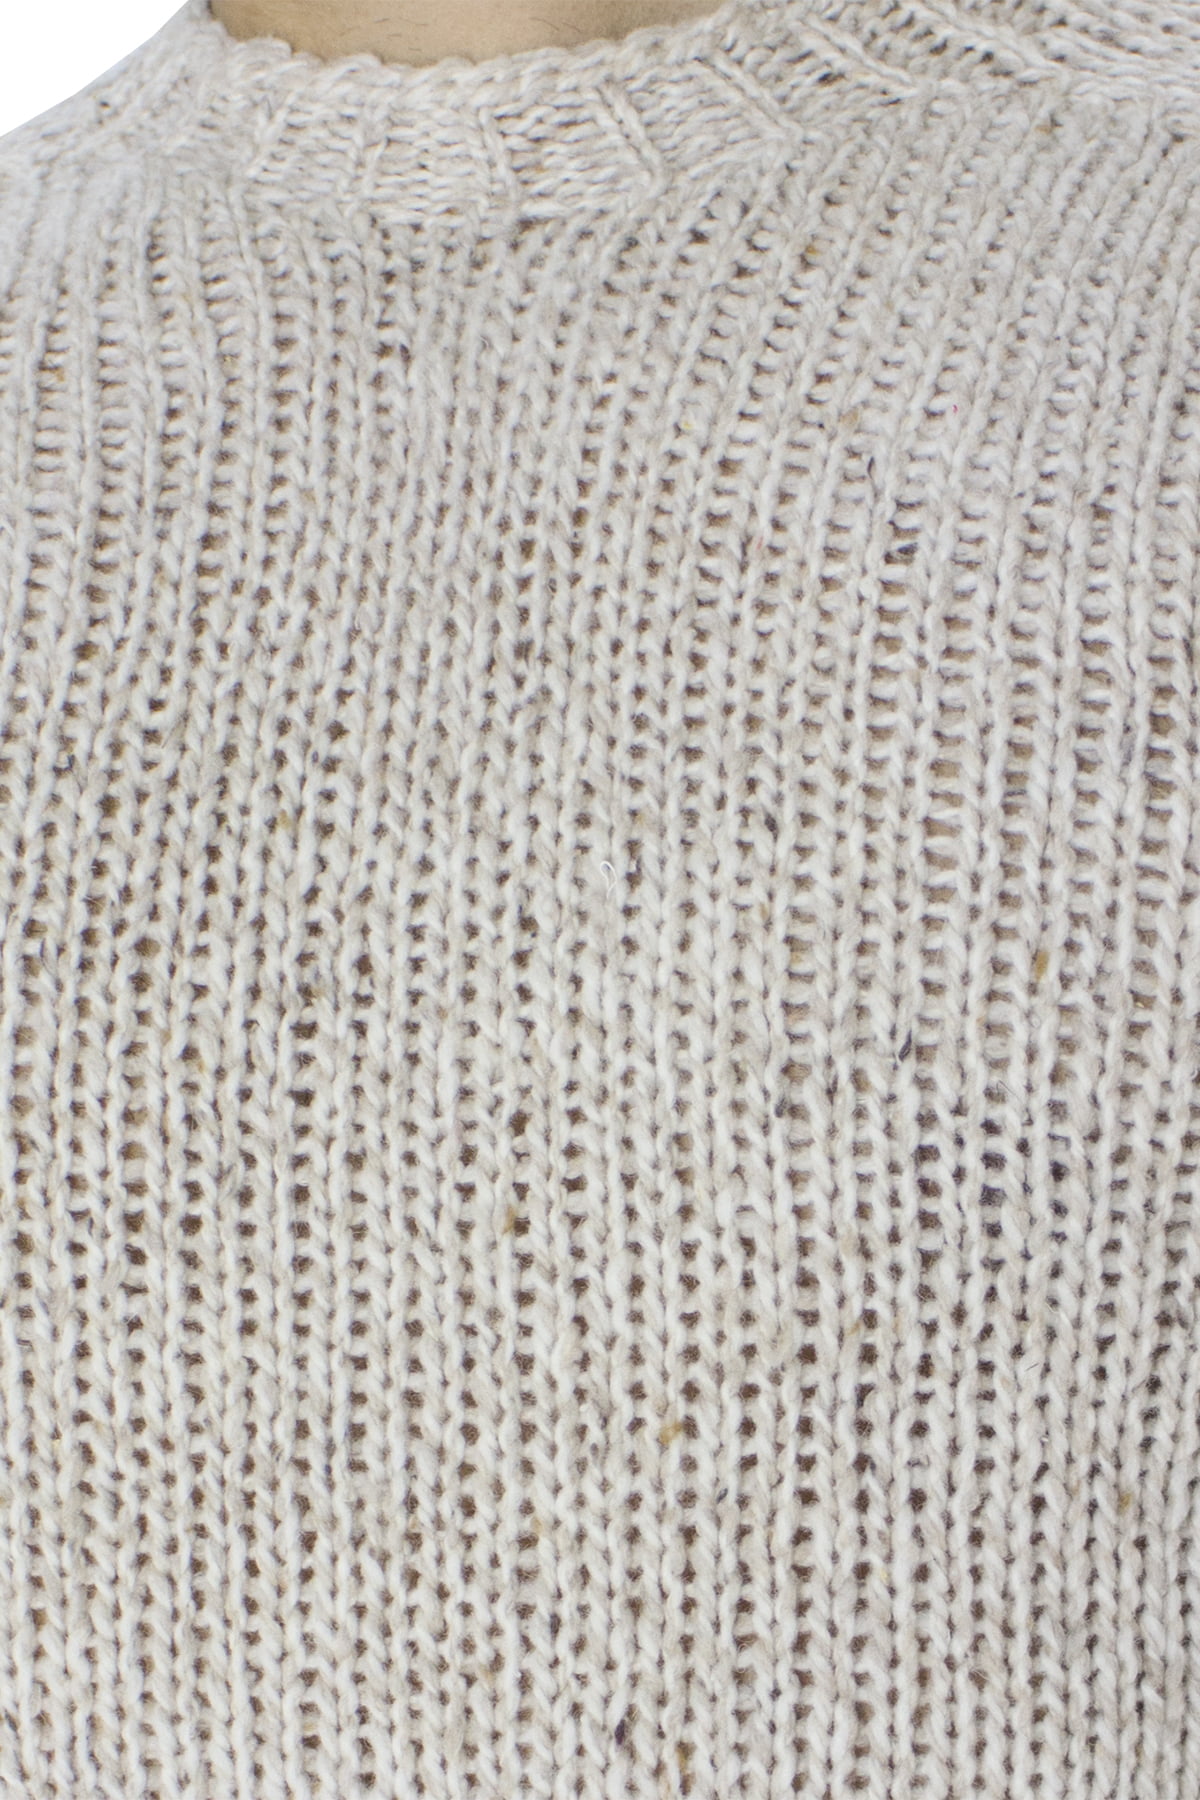 Maglione uomo Girocollo beige in lana 100% intrecciata slim fit